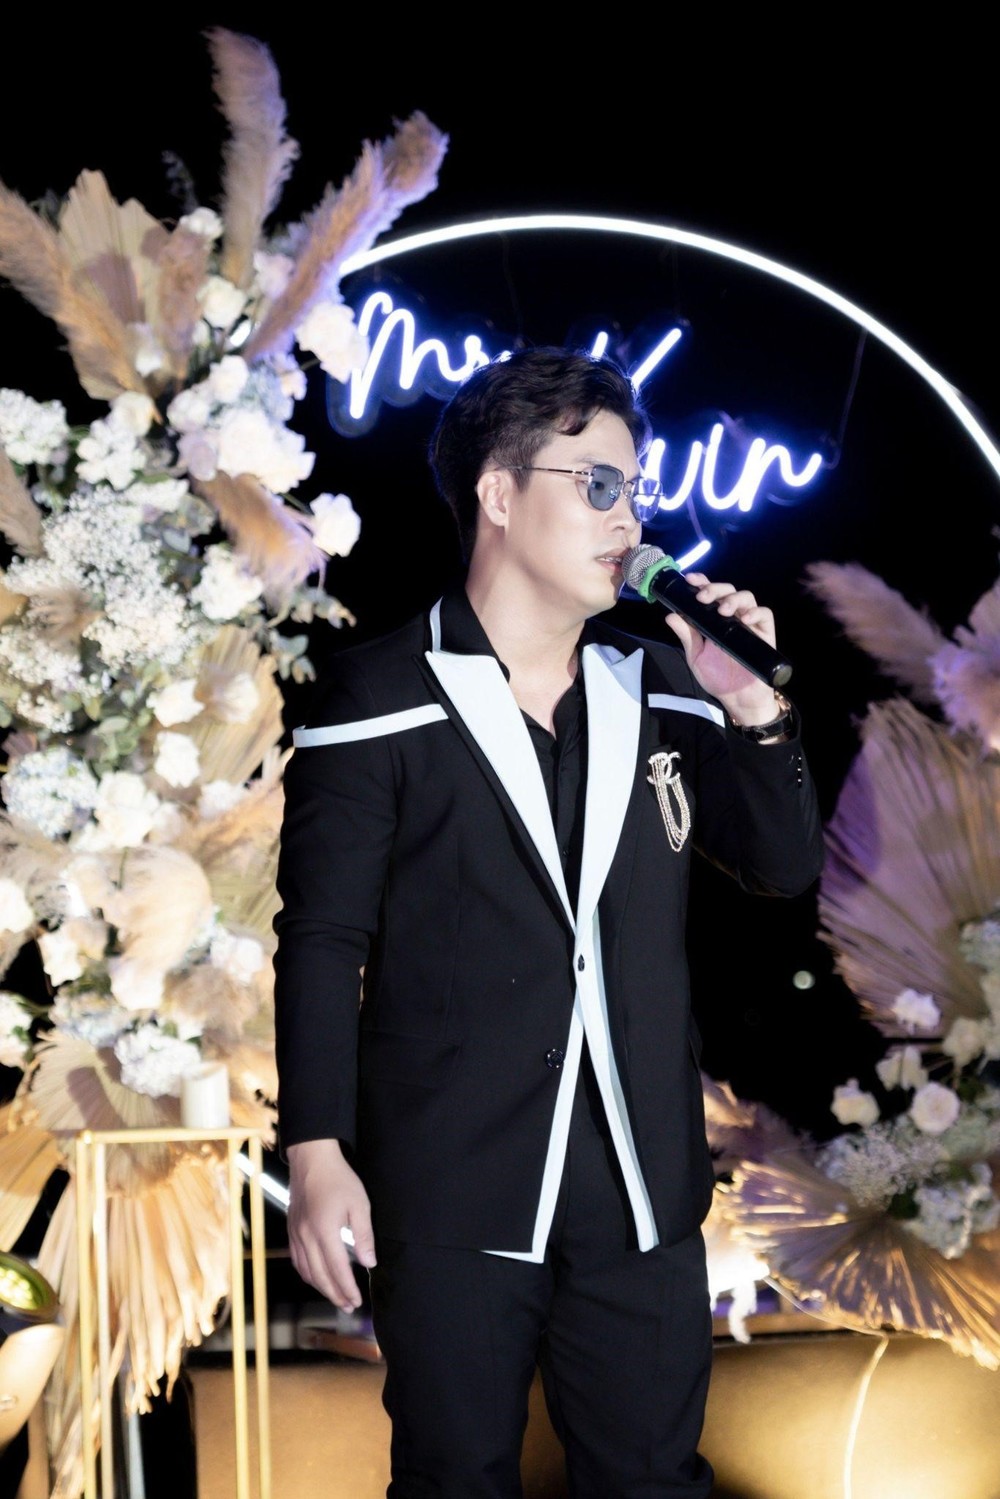 Kevin Toàn- Gạt bỏ định kiến, quyết tâm theo đuổi đam mê trong âm nhạc - Ảnh 4.